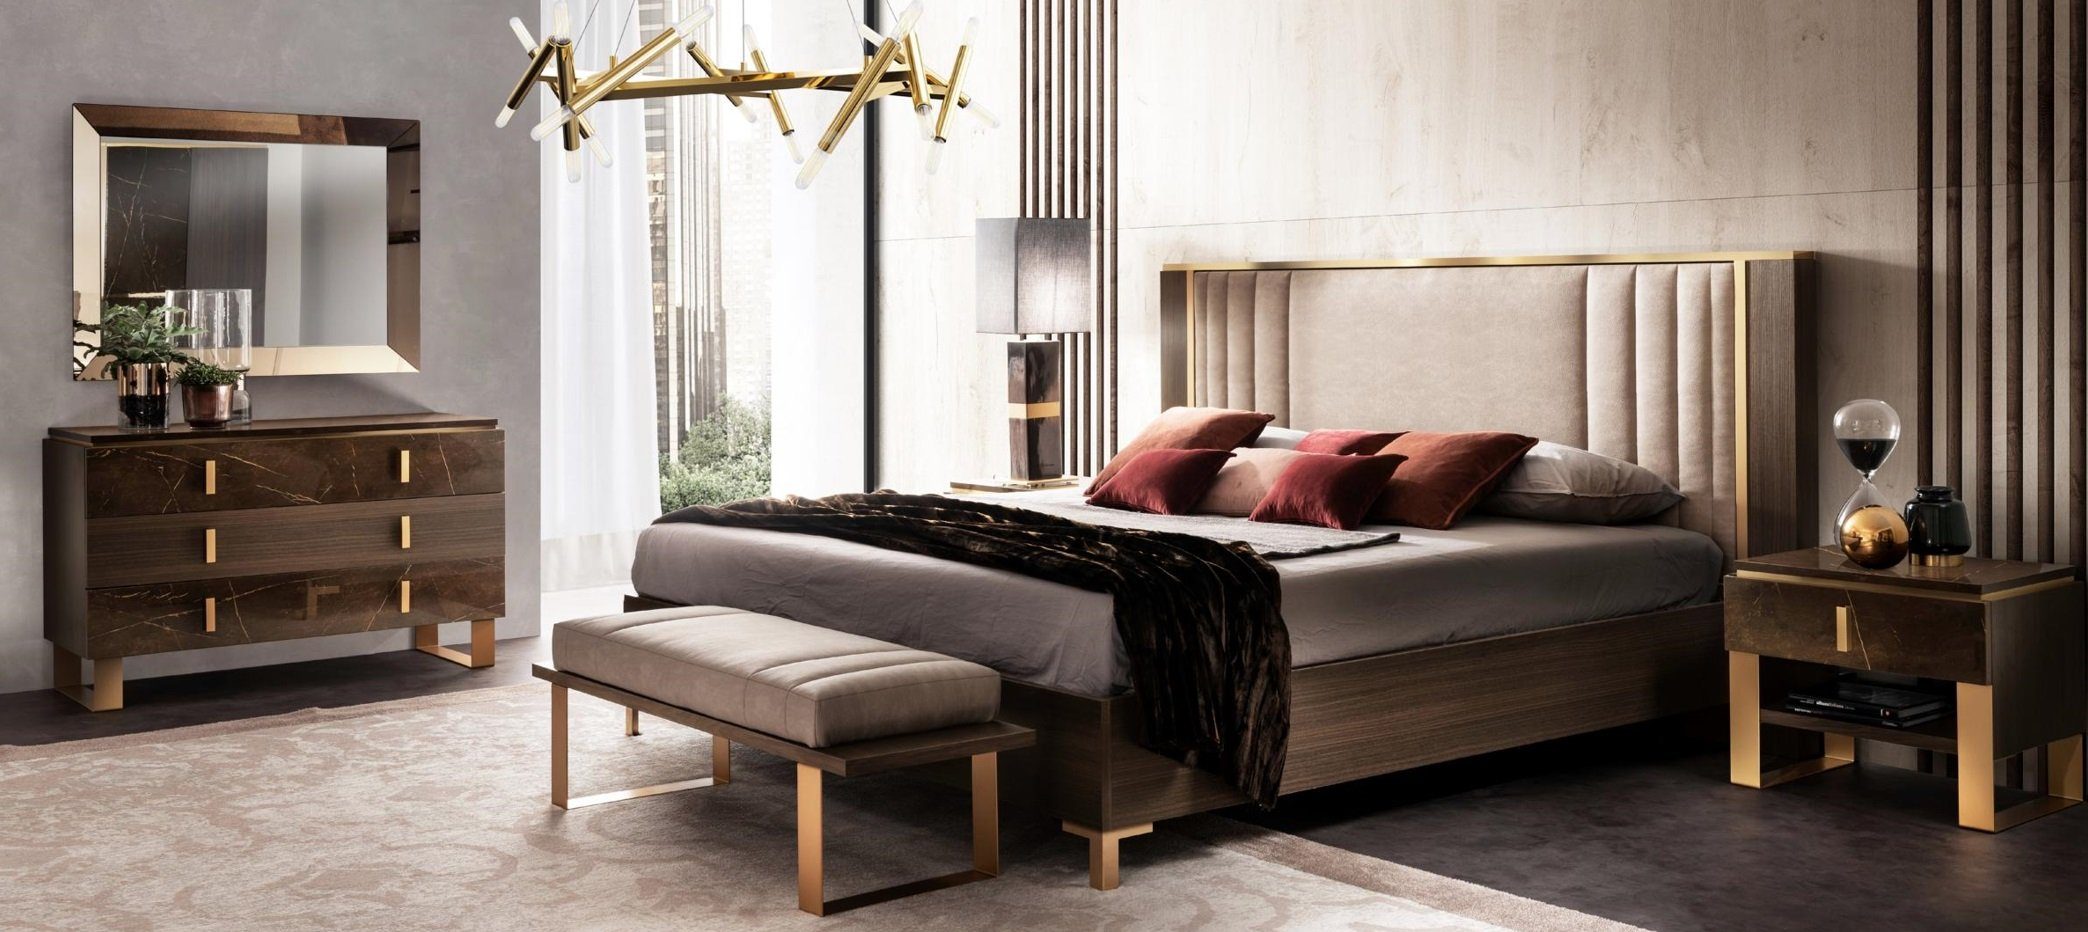 JVmoebel Schlafzimmer-Set Luxus Schlafzimmer Sets Bett 2x Nachttisch Klassischer Design 3tlg